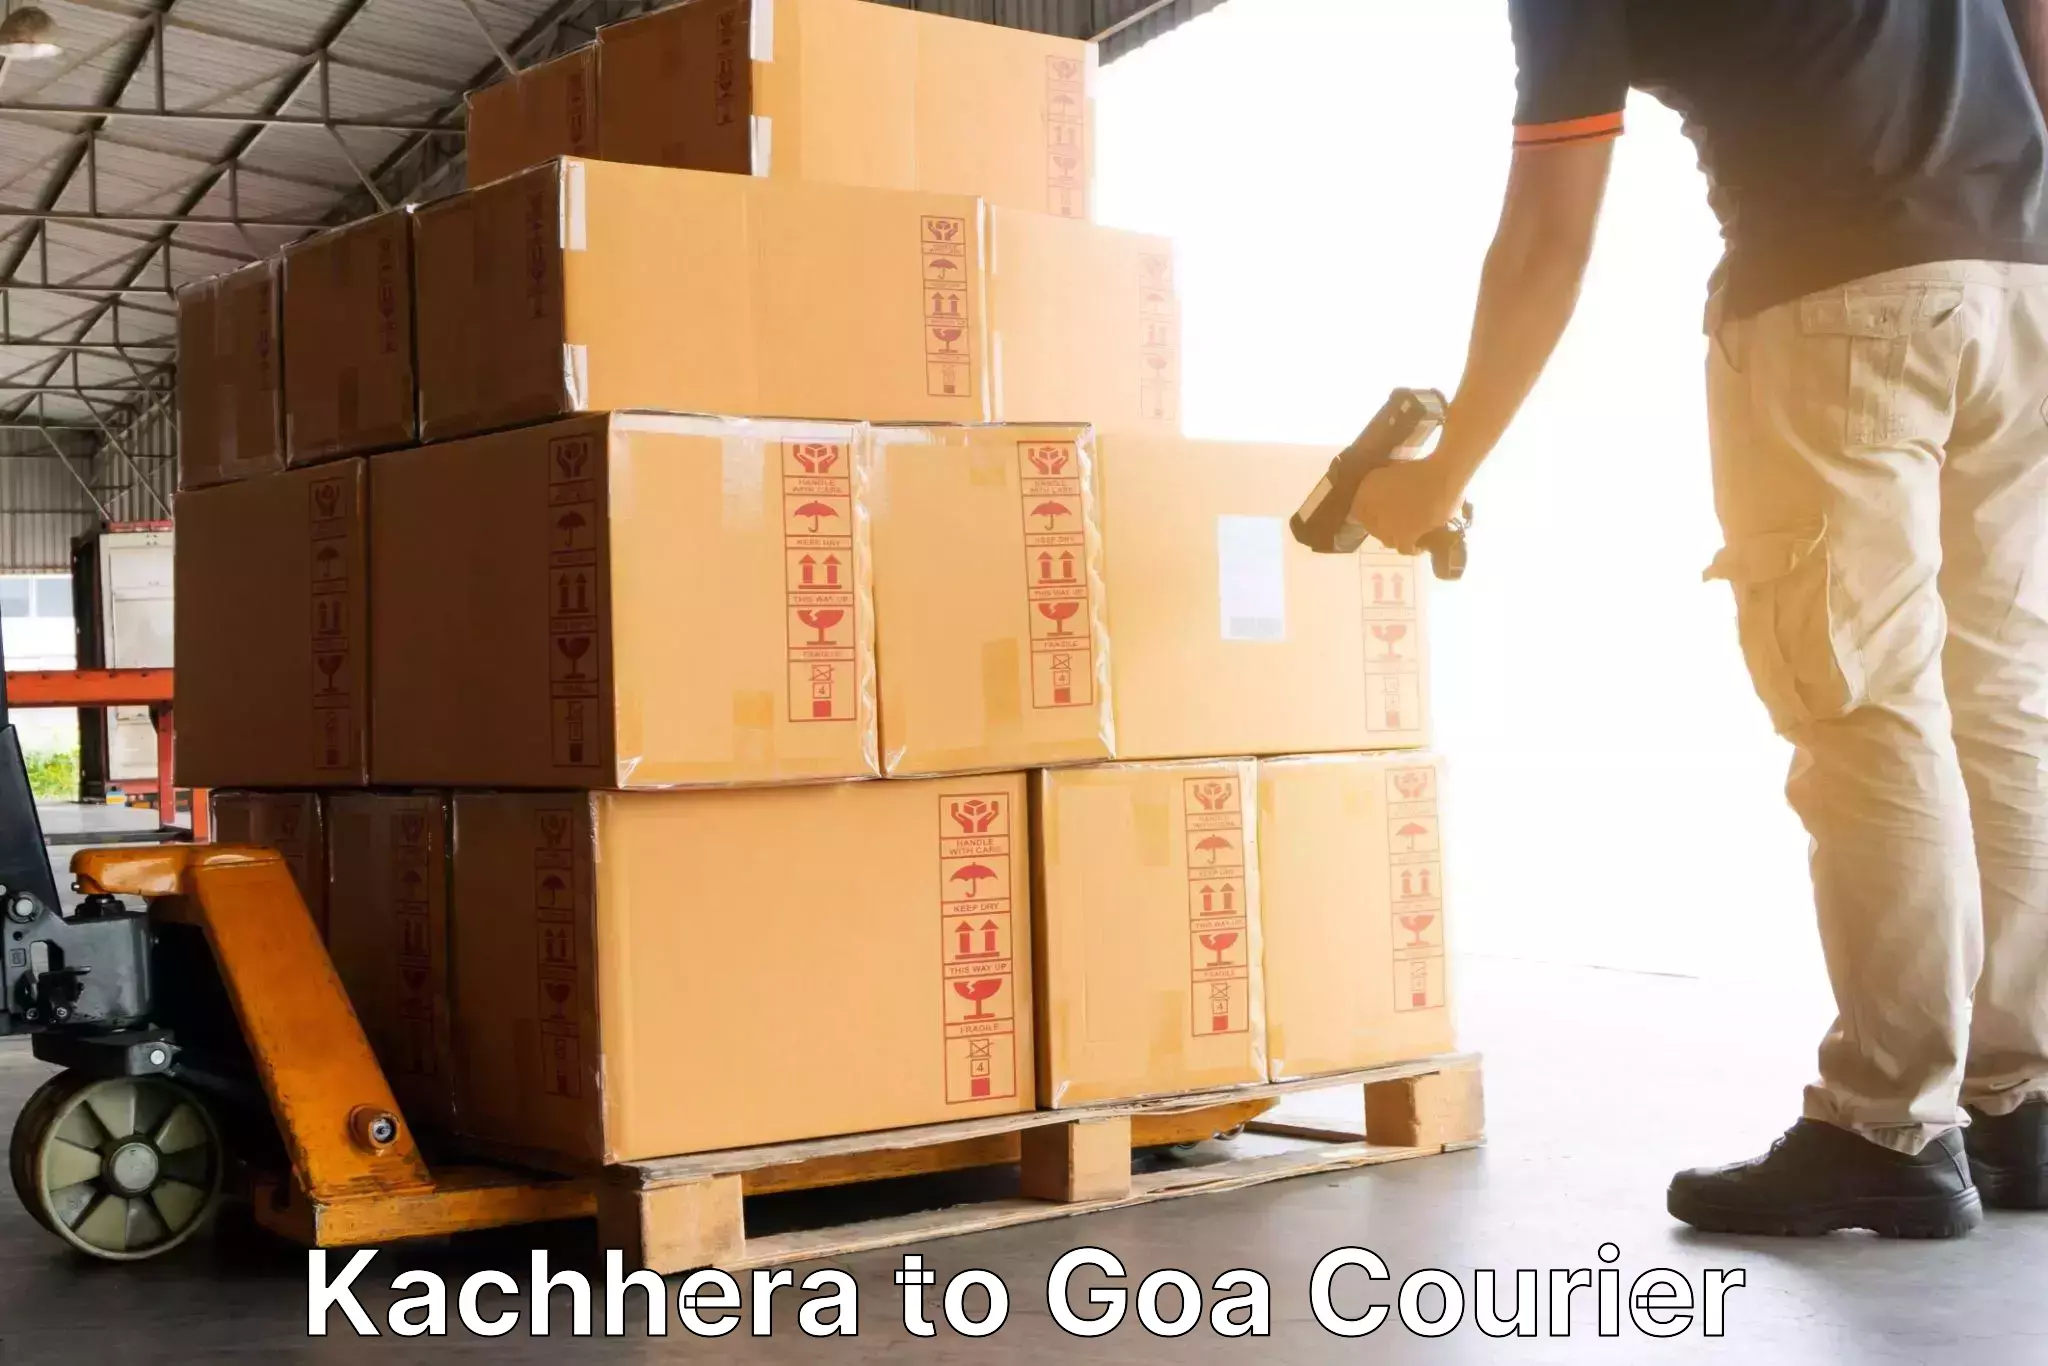 Next day courier in Kachhera to Goa University